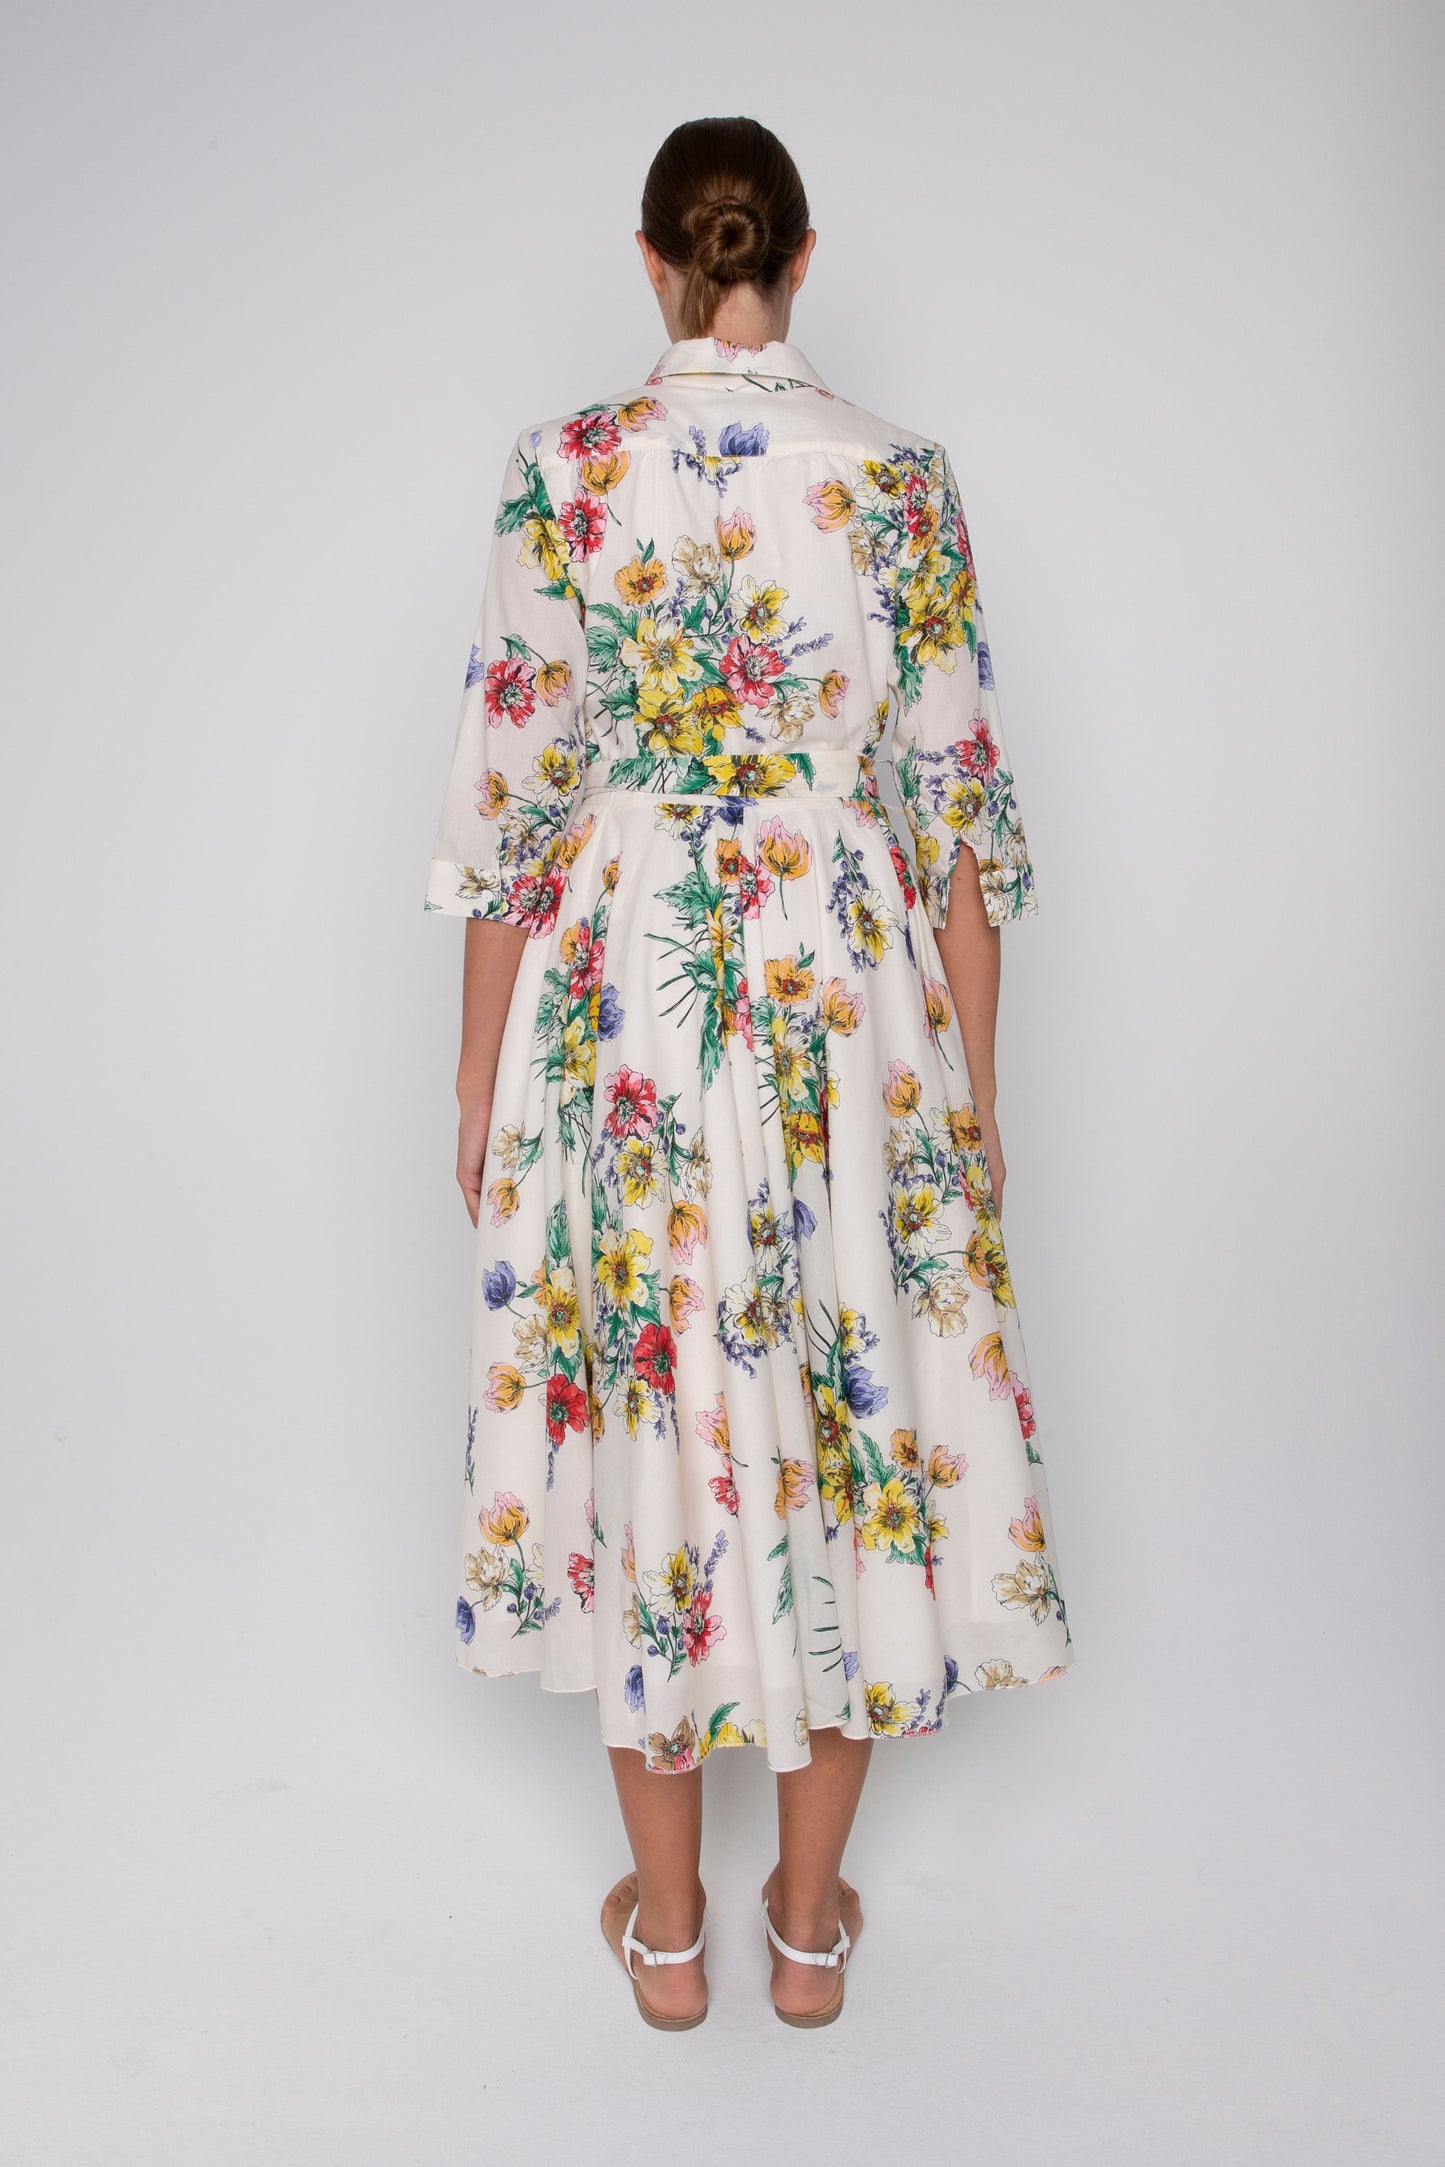 Bs5wd018 spritz dress - white / multi colour floral Dresses